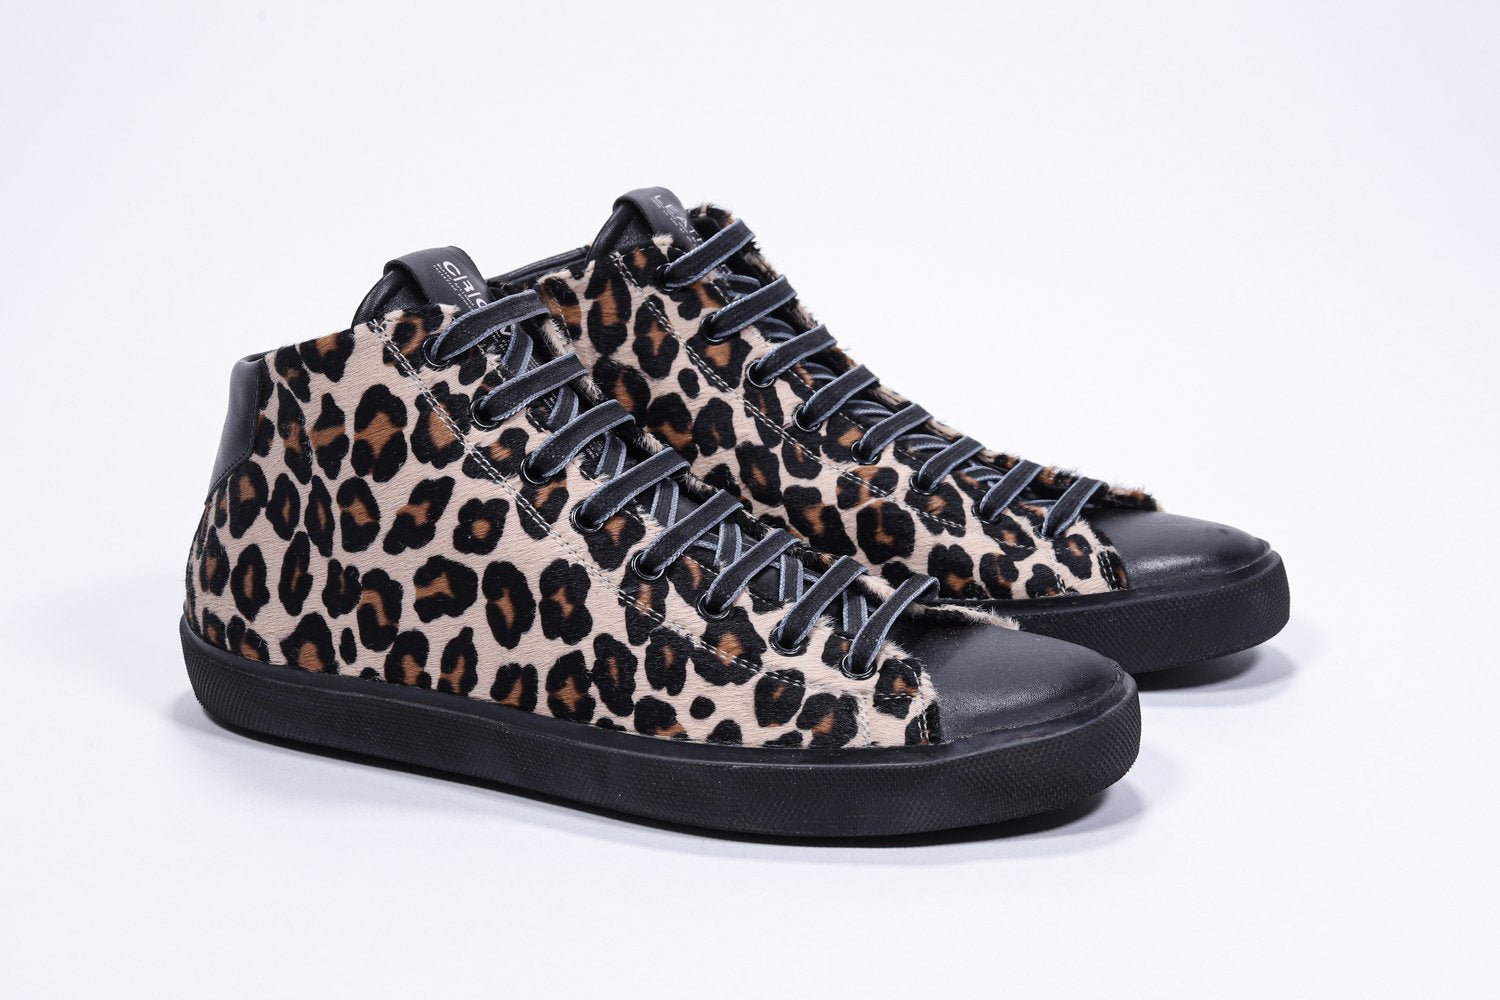 Tre quarti del top medio leopardato sneaker con tomaia in pelle di vitello a pelo pieno, zip interna e suola nera.